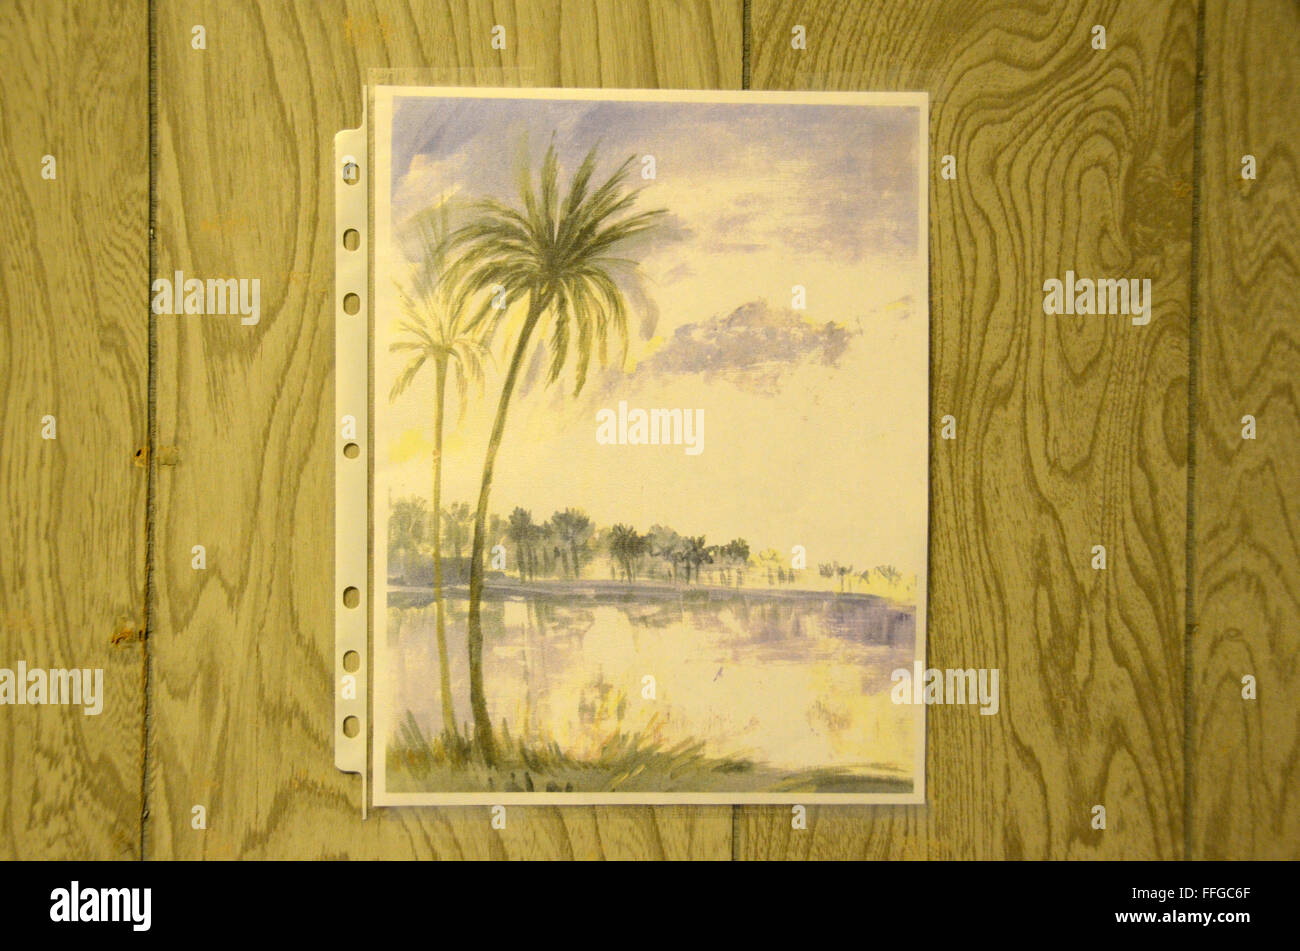 GTMO Guantanamo camp delta prigioniero detenuto arte visualizzati nella libreria Foto Stock